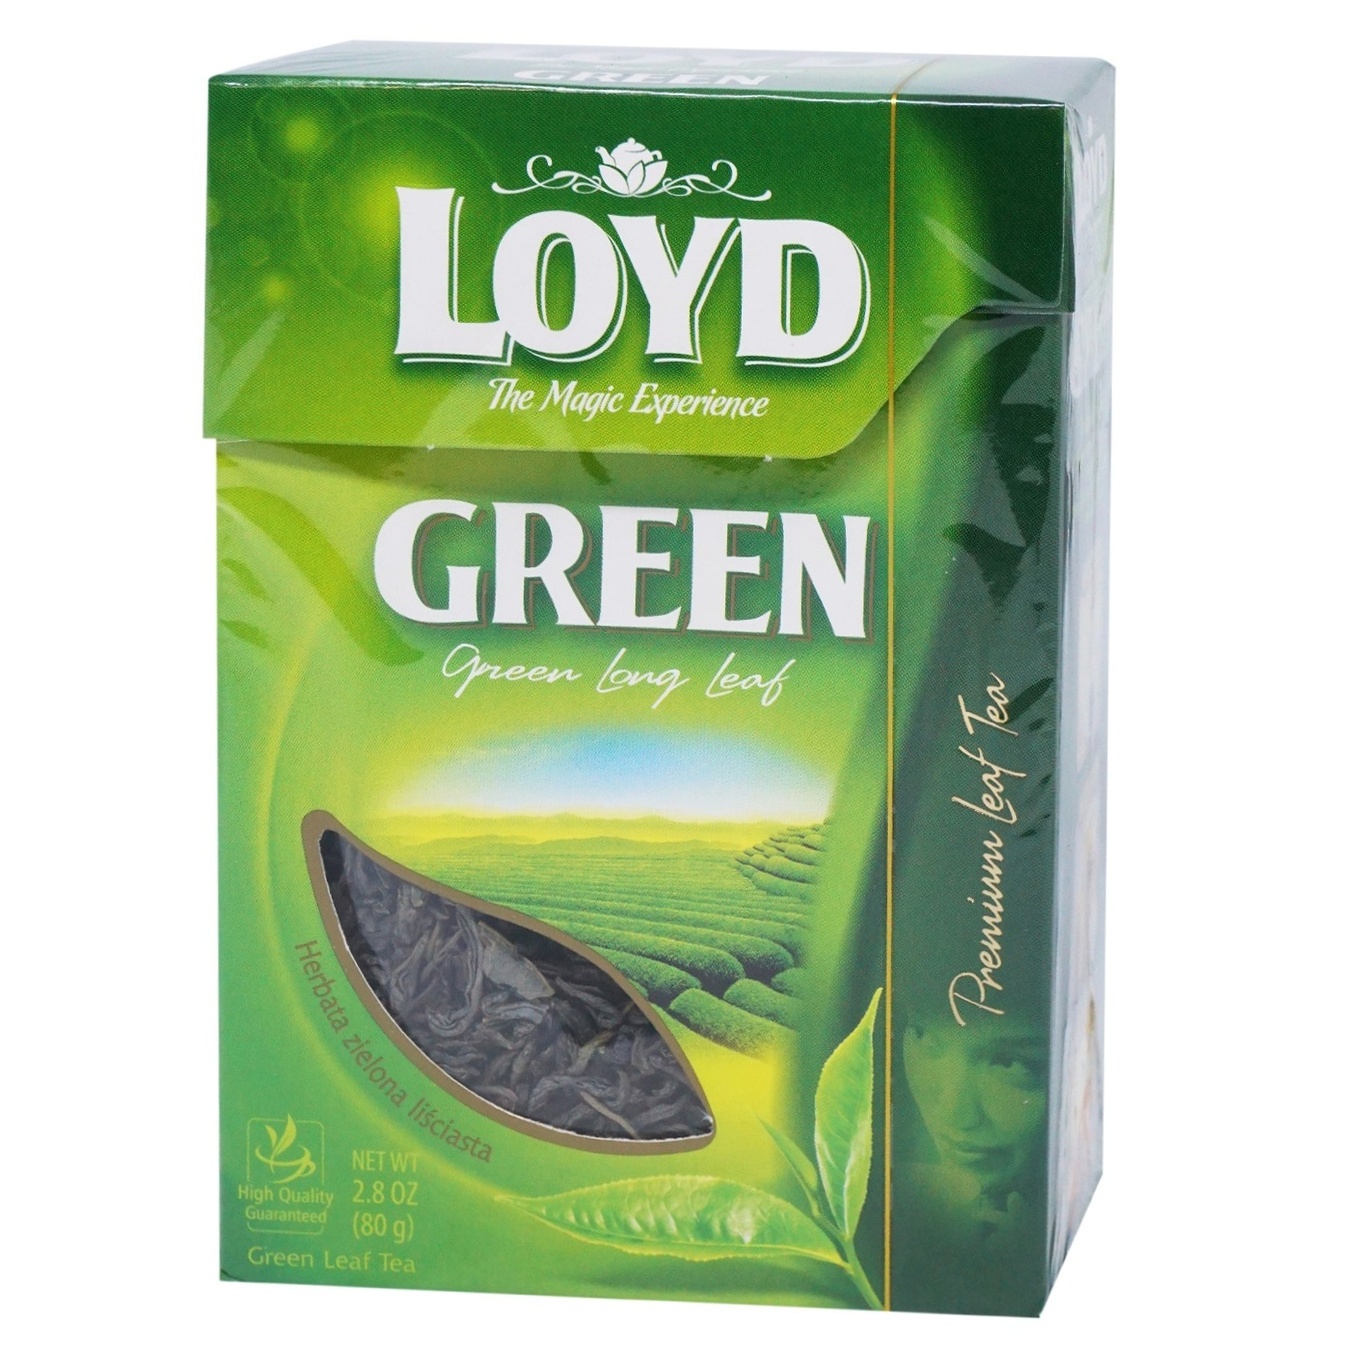 Loyd green leaf tea 80g